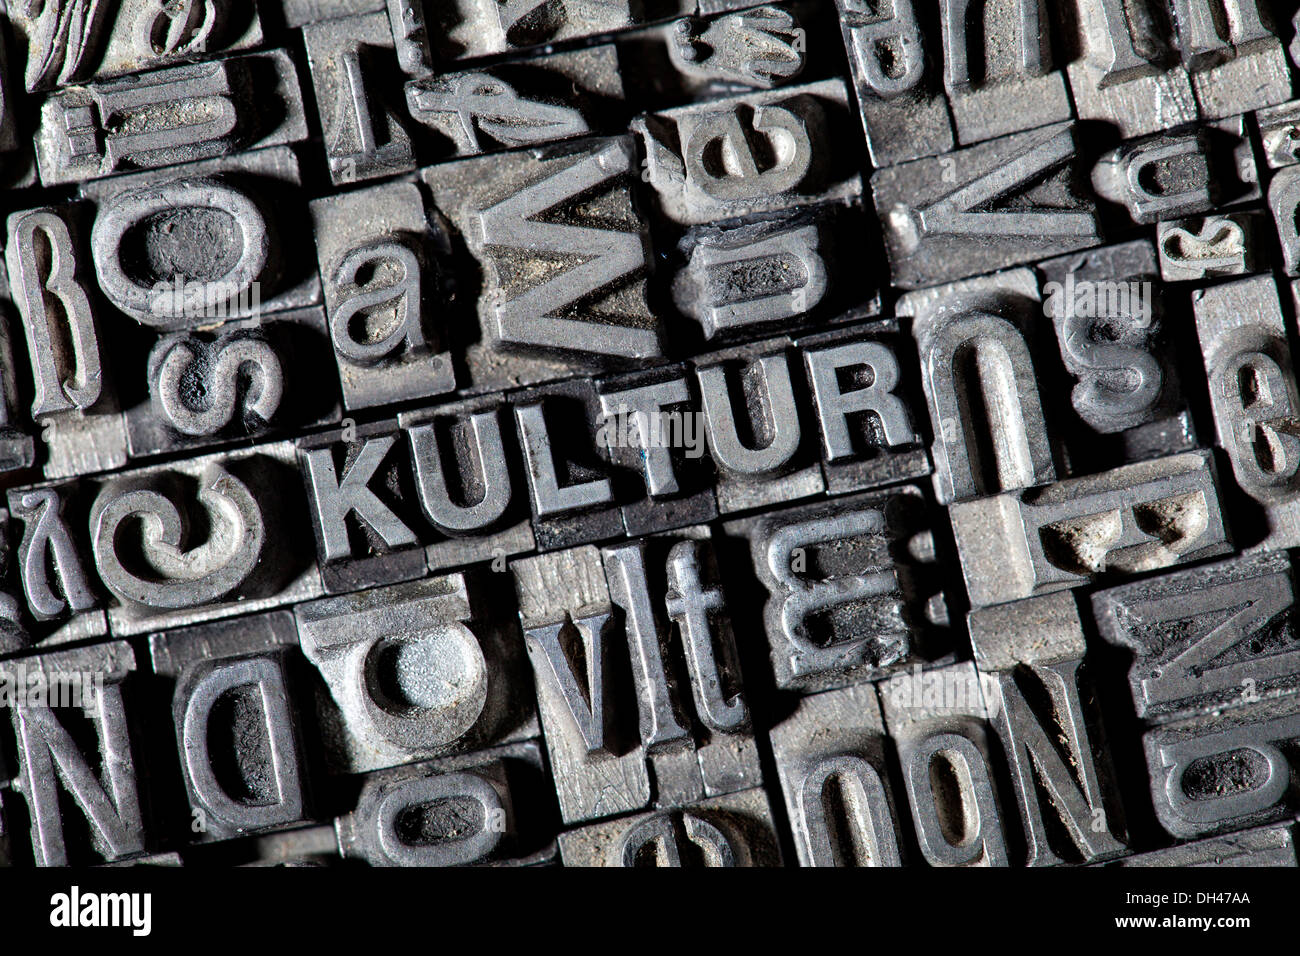 Antiguas letras de plomo que forman la palabra "Kultur", Alemán para 'cultura' Foto de stock